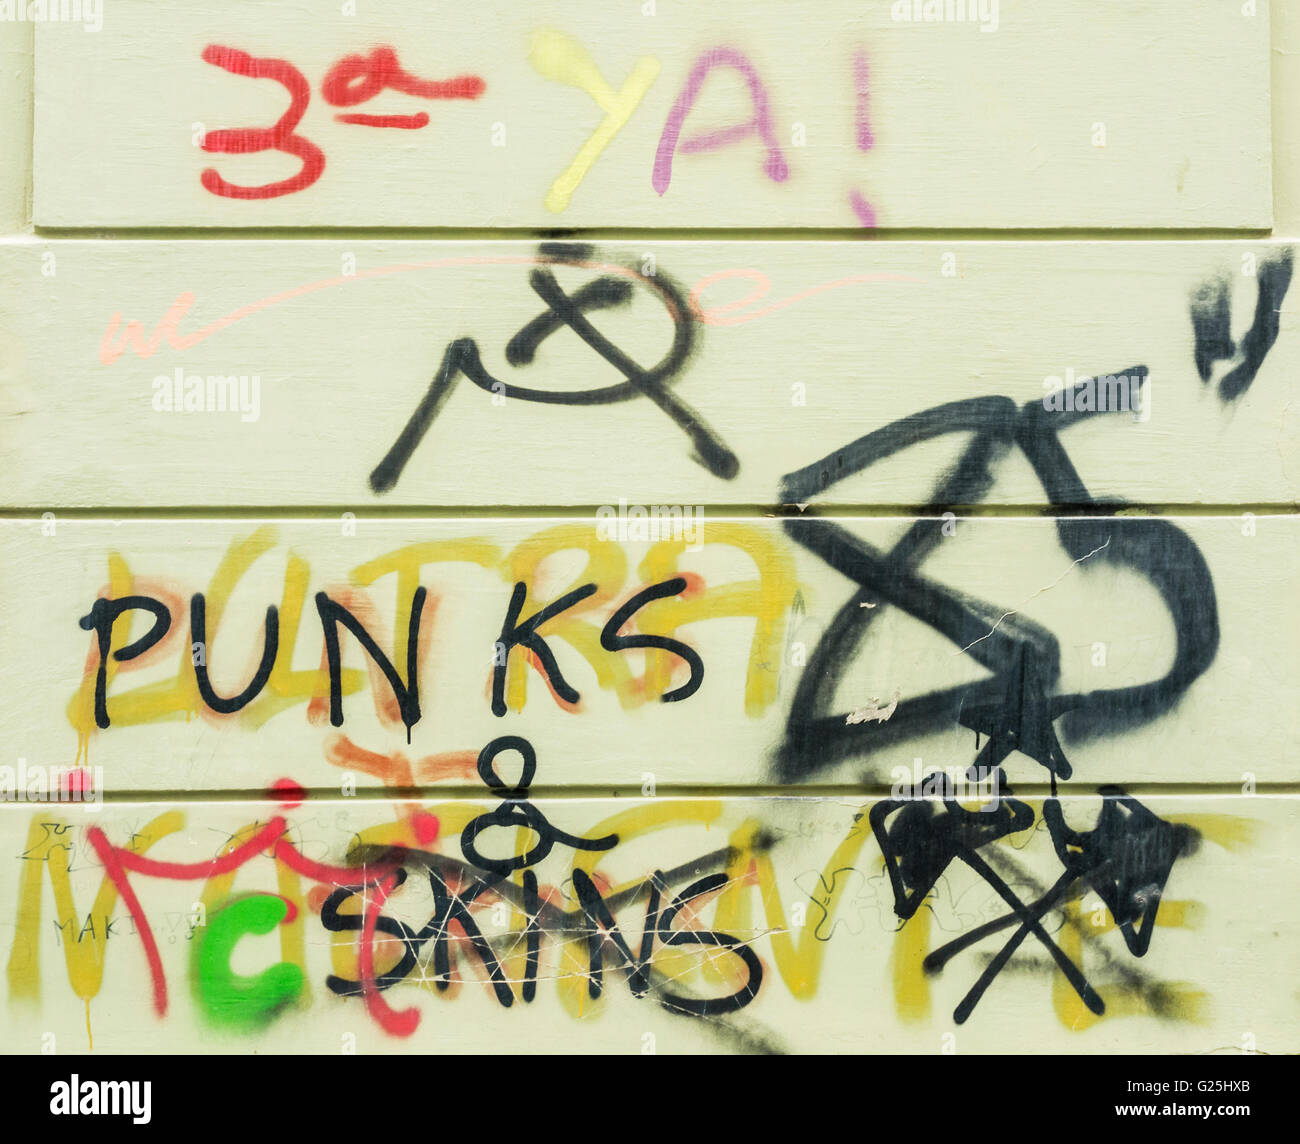 Les Punks et skins graffitis Banque D'Images